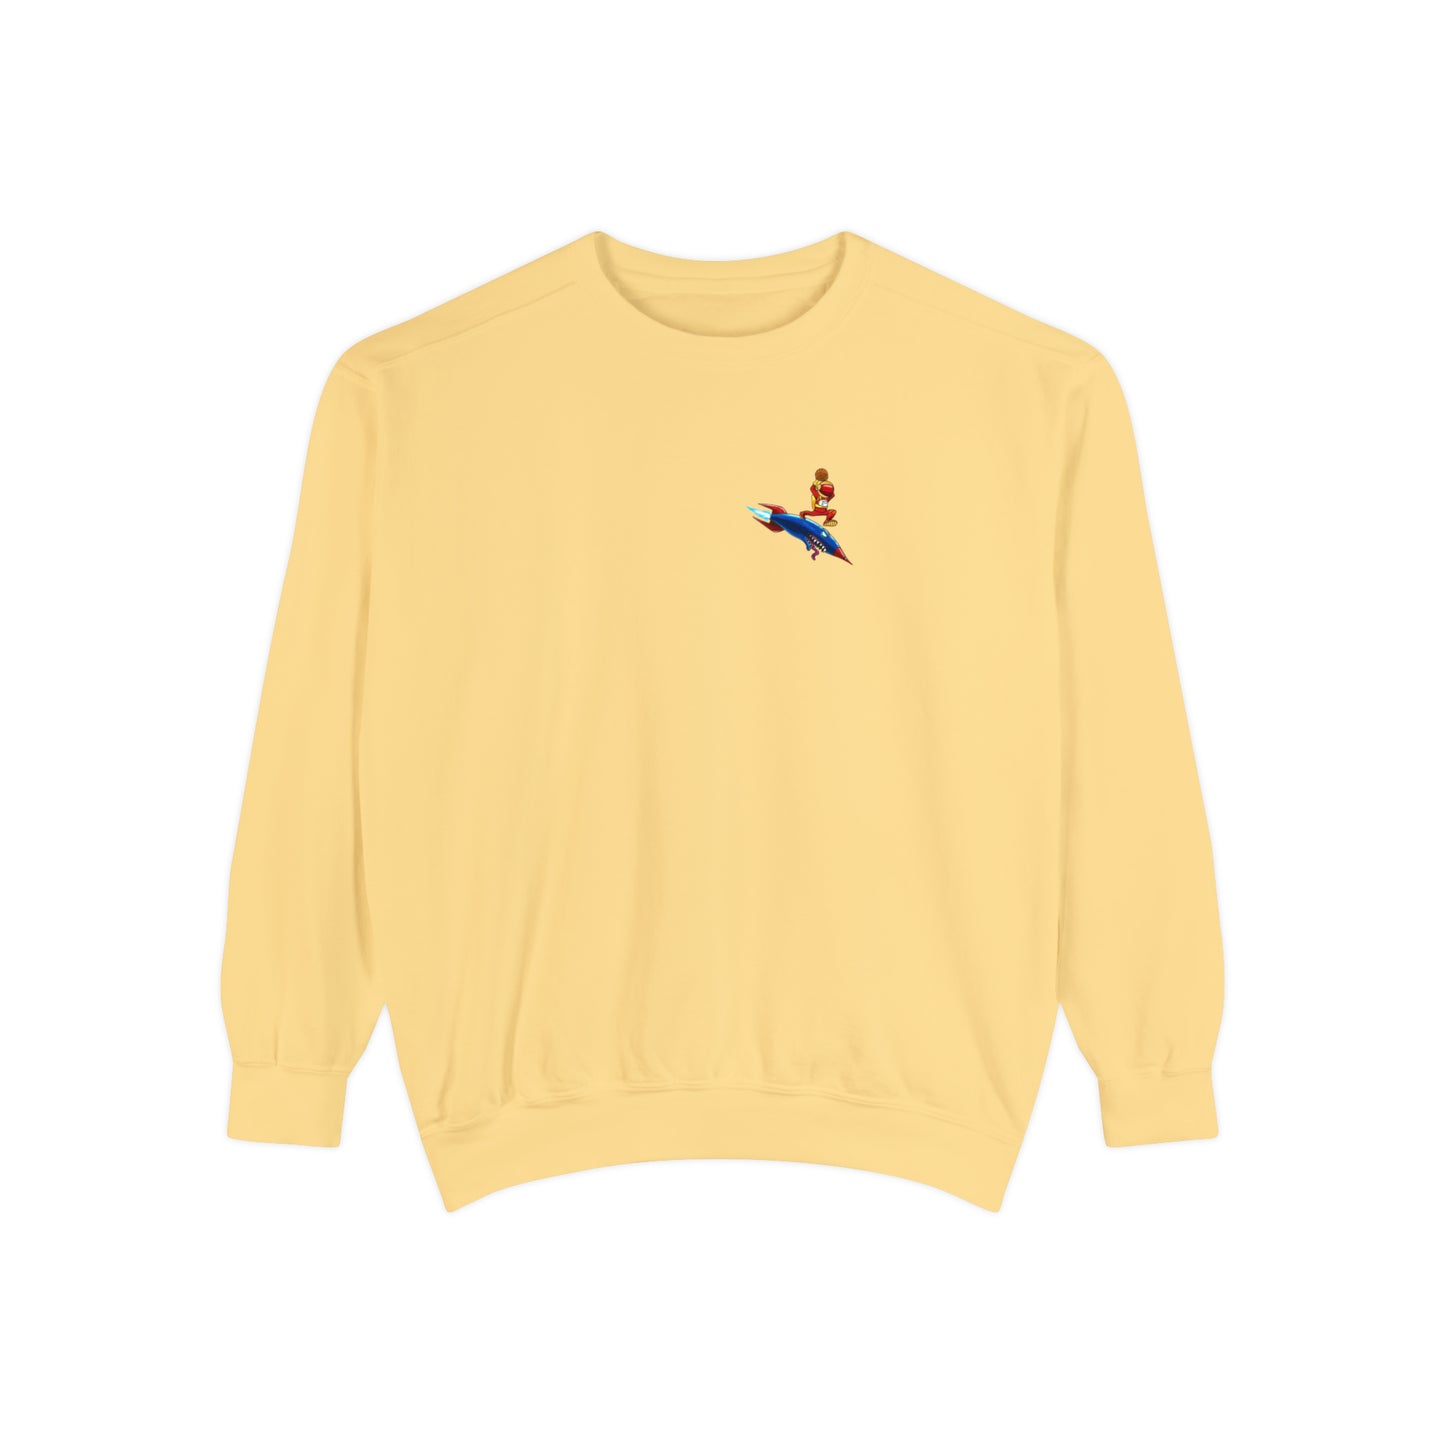 Blast Off Unisex Comfort Colors Sweatshirt